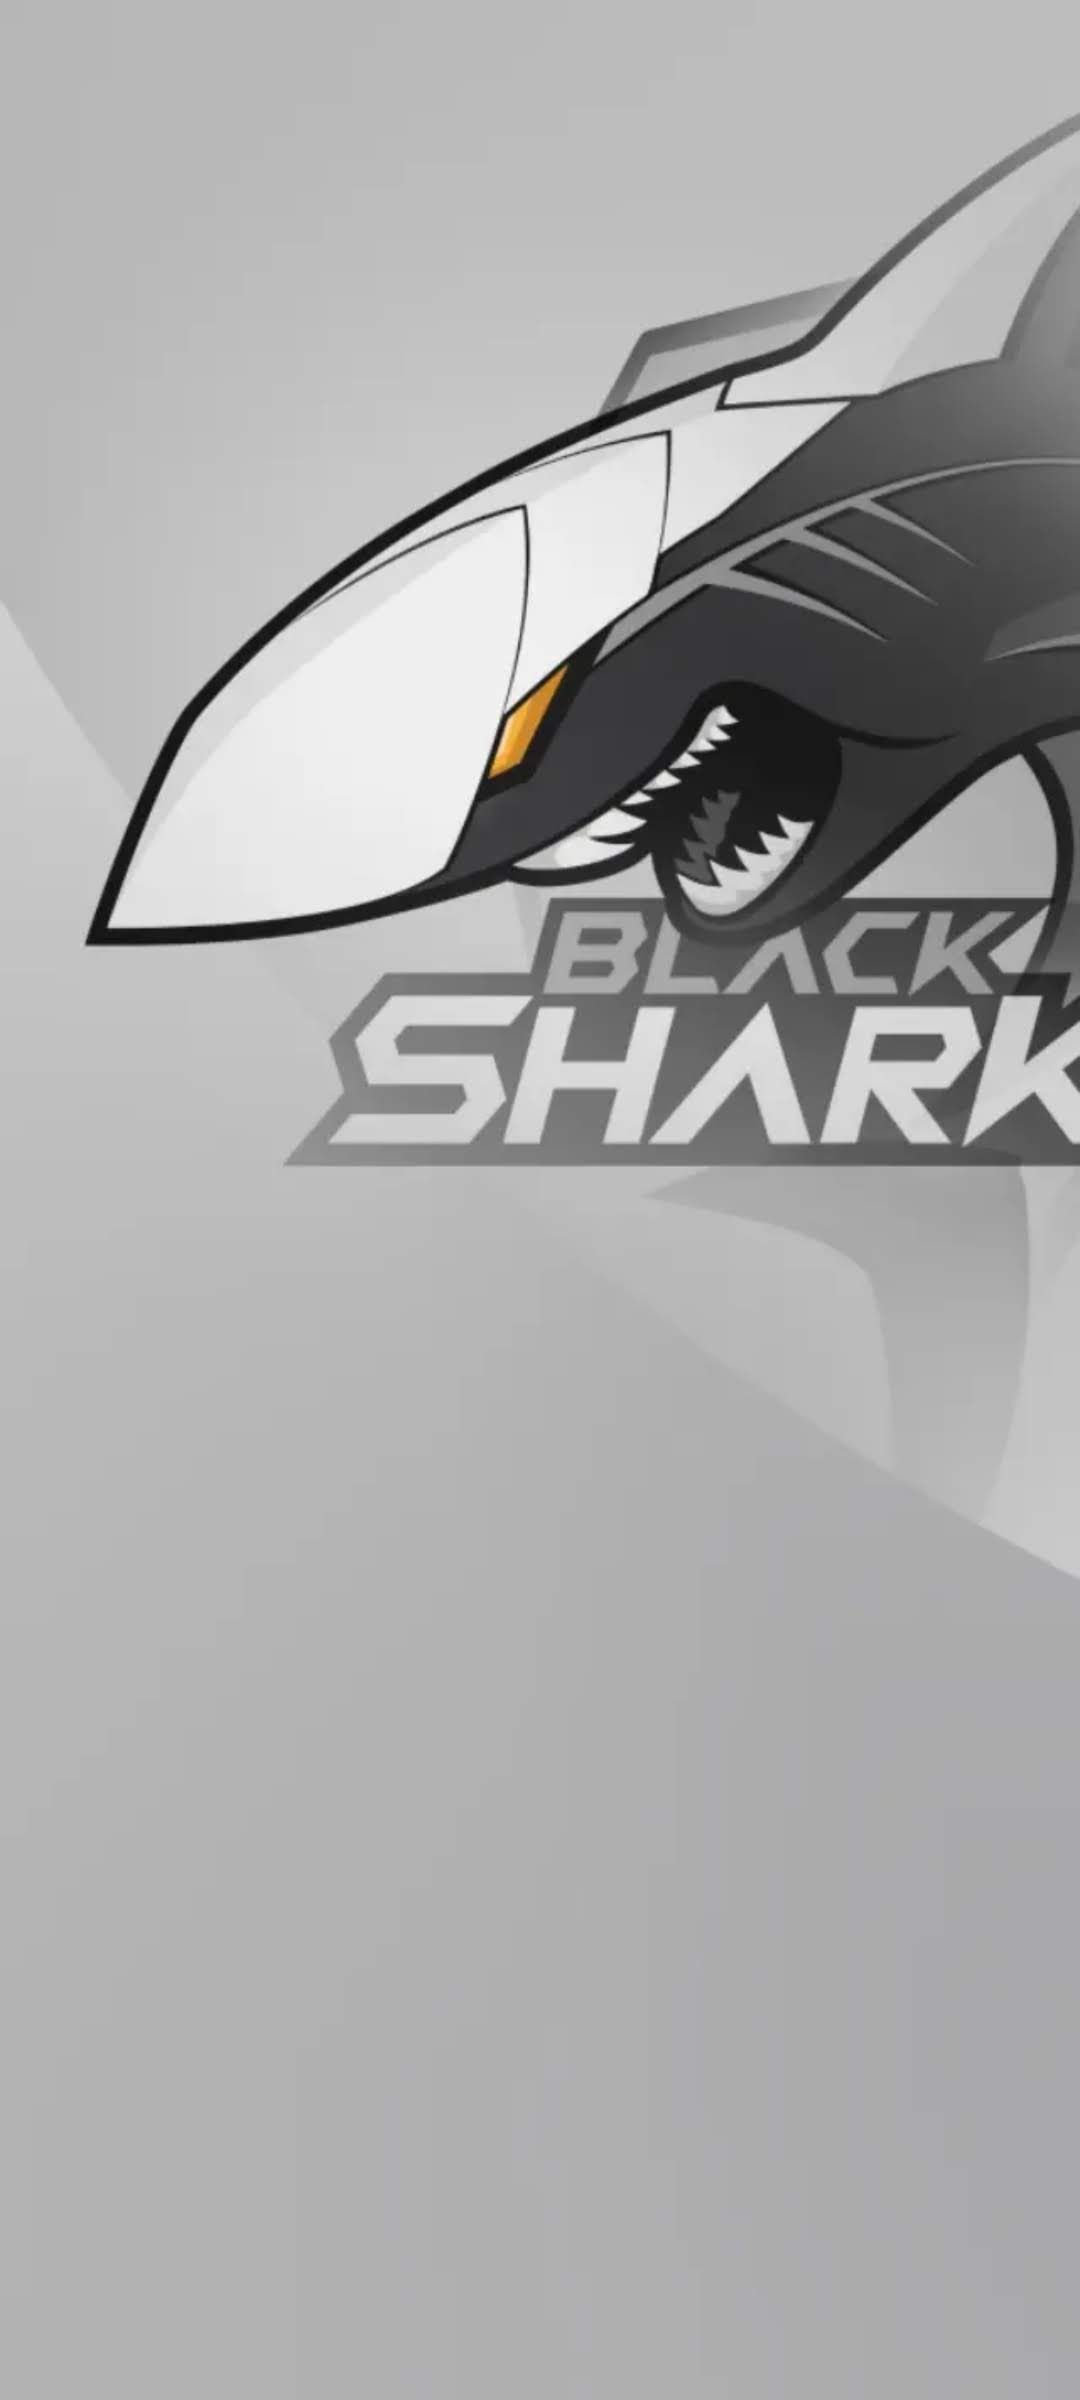 Những hình nền Black Shark 3 độc đáo sẽ khiến bạn trầm trồ với các hiệu ứng ánh sáng tuyệt đẹp, tạo nên một không gian ấn tượng trên điện thoại của bạn. Chúng tôi tổng hợp và chia sẻ để bạn dễ dàng cập nhật và thay đổi bố cục, tạo sự mới mẻ cho màn hình điện thoại của mình.